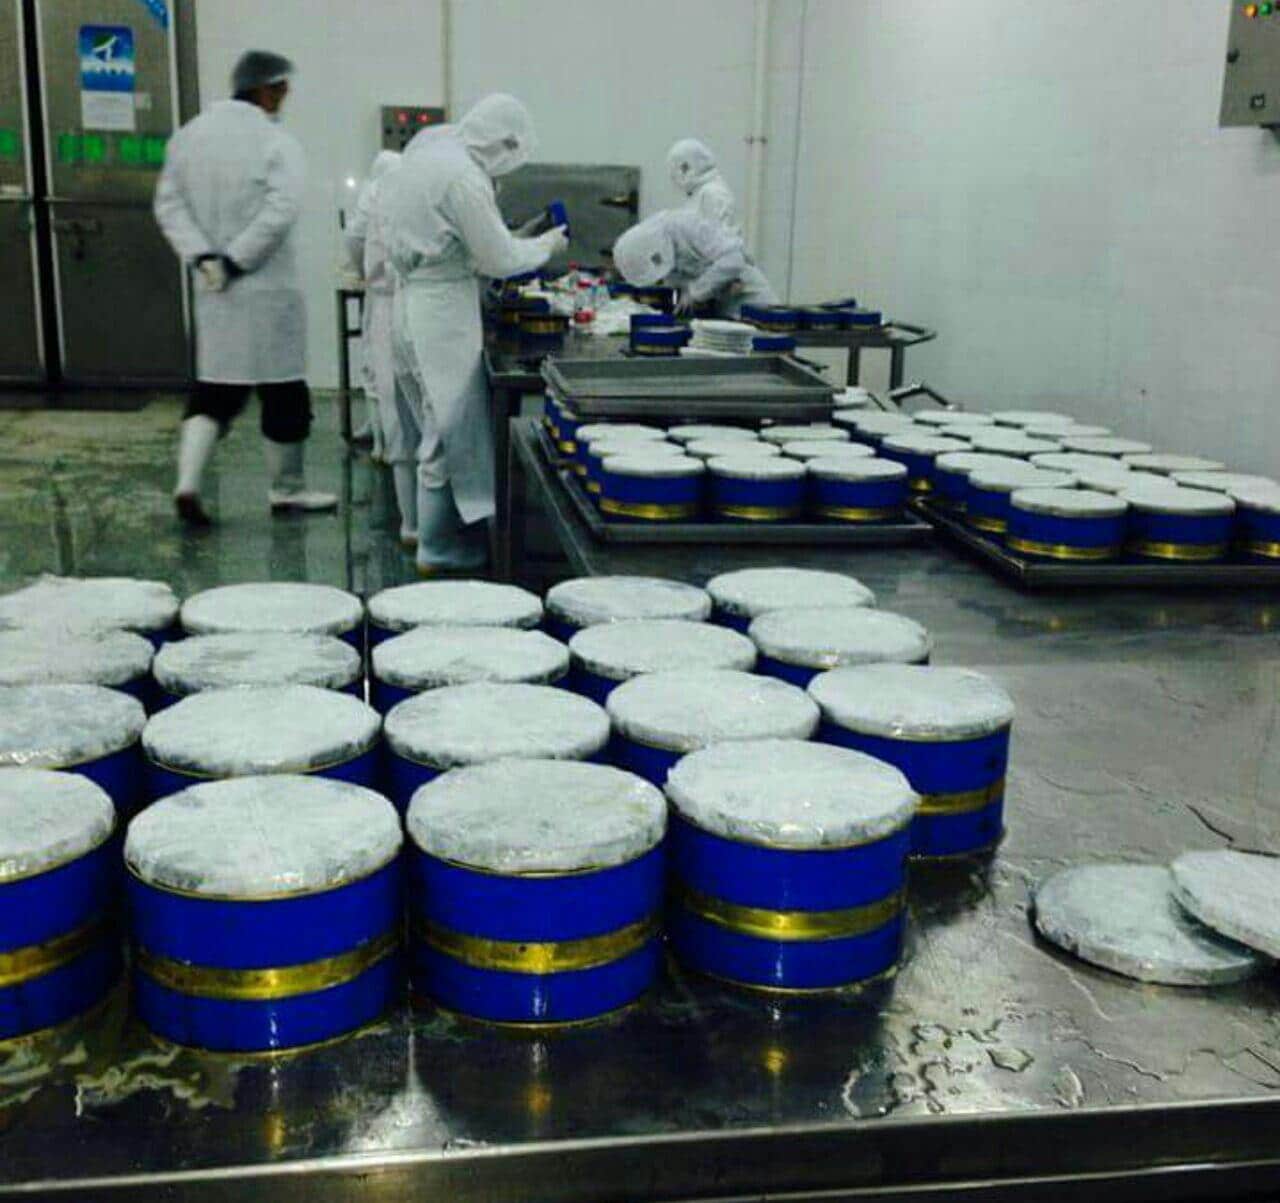 Suppliers of Grade 1 caviar in Dubai